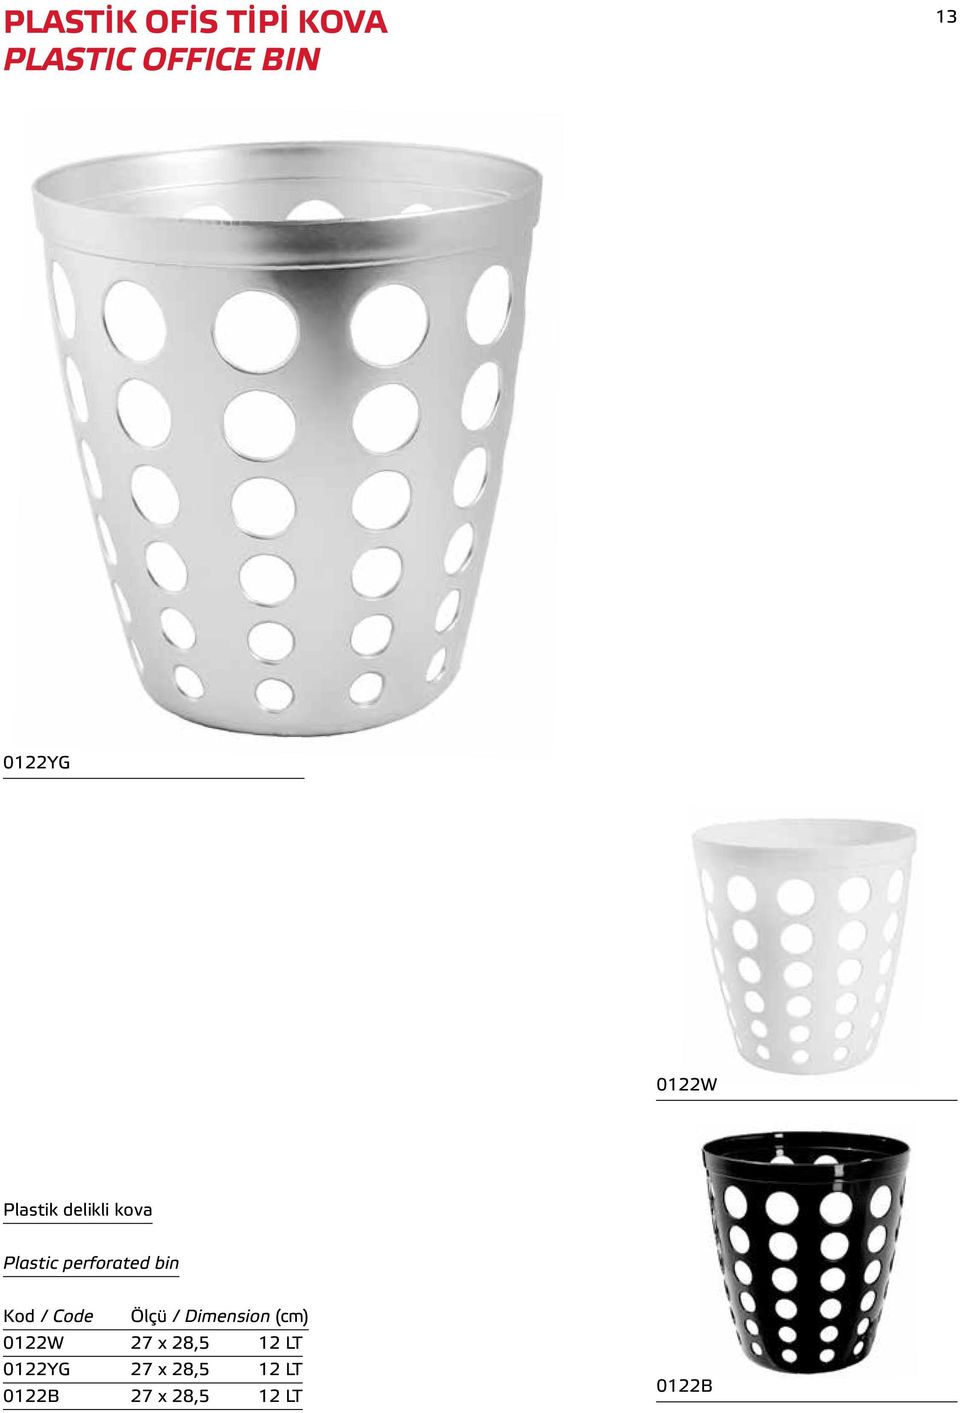 Plastic perforated bin 0122W 27 x 28,5 12